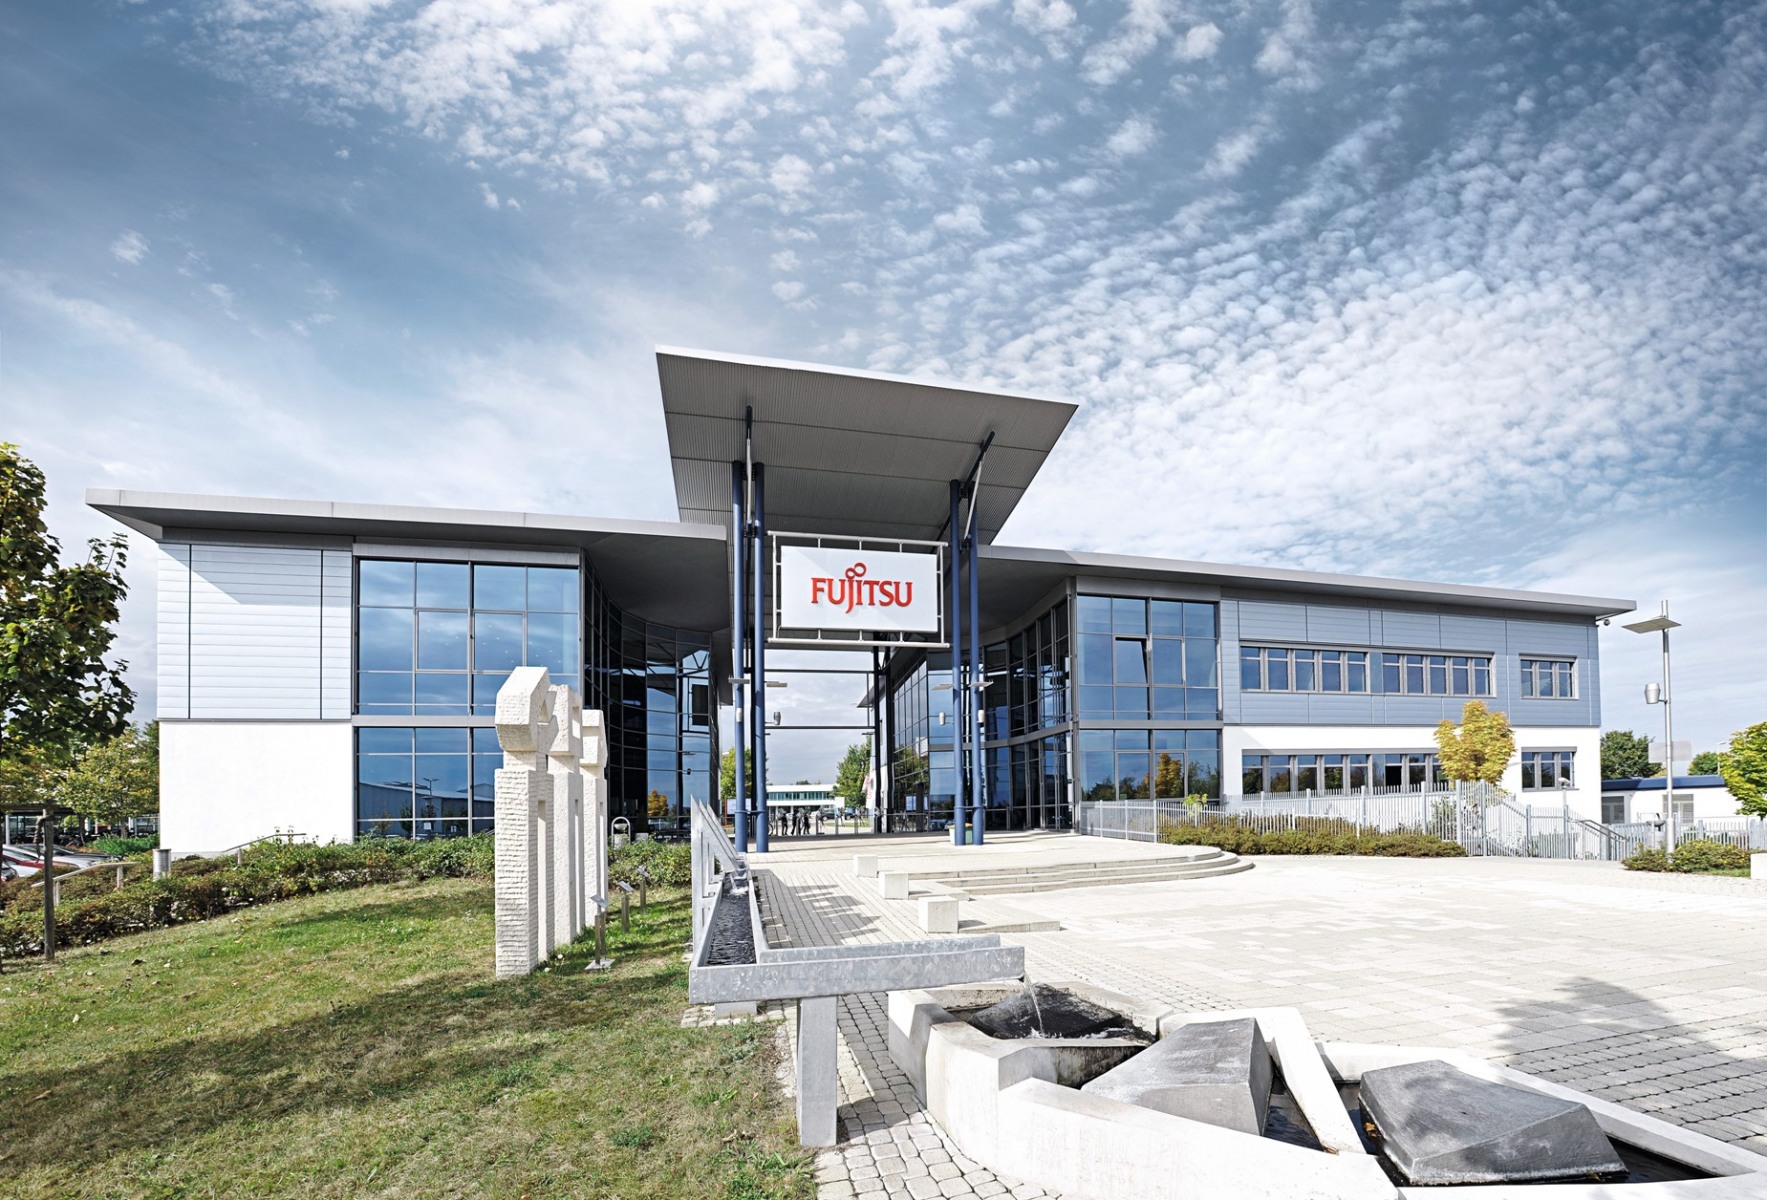 Fujitsu-Haupteingang in Augsburg: Arbeitsplatz für etwa 1.500 Mitarbeiter, die in Deutschlands einziger PC-Fertigung täglich bis zu 21.000 Units produzieren
Foto: Fujitsu